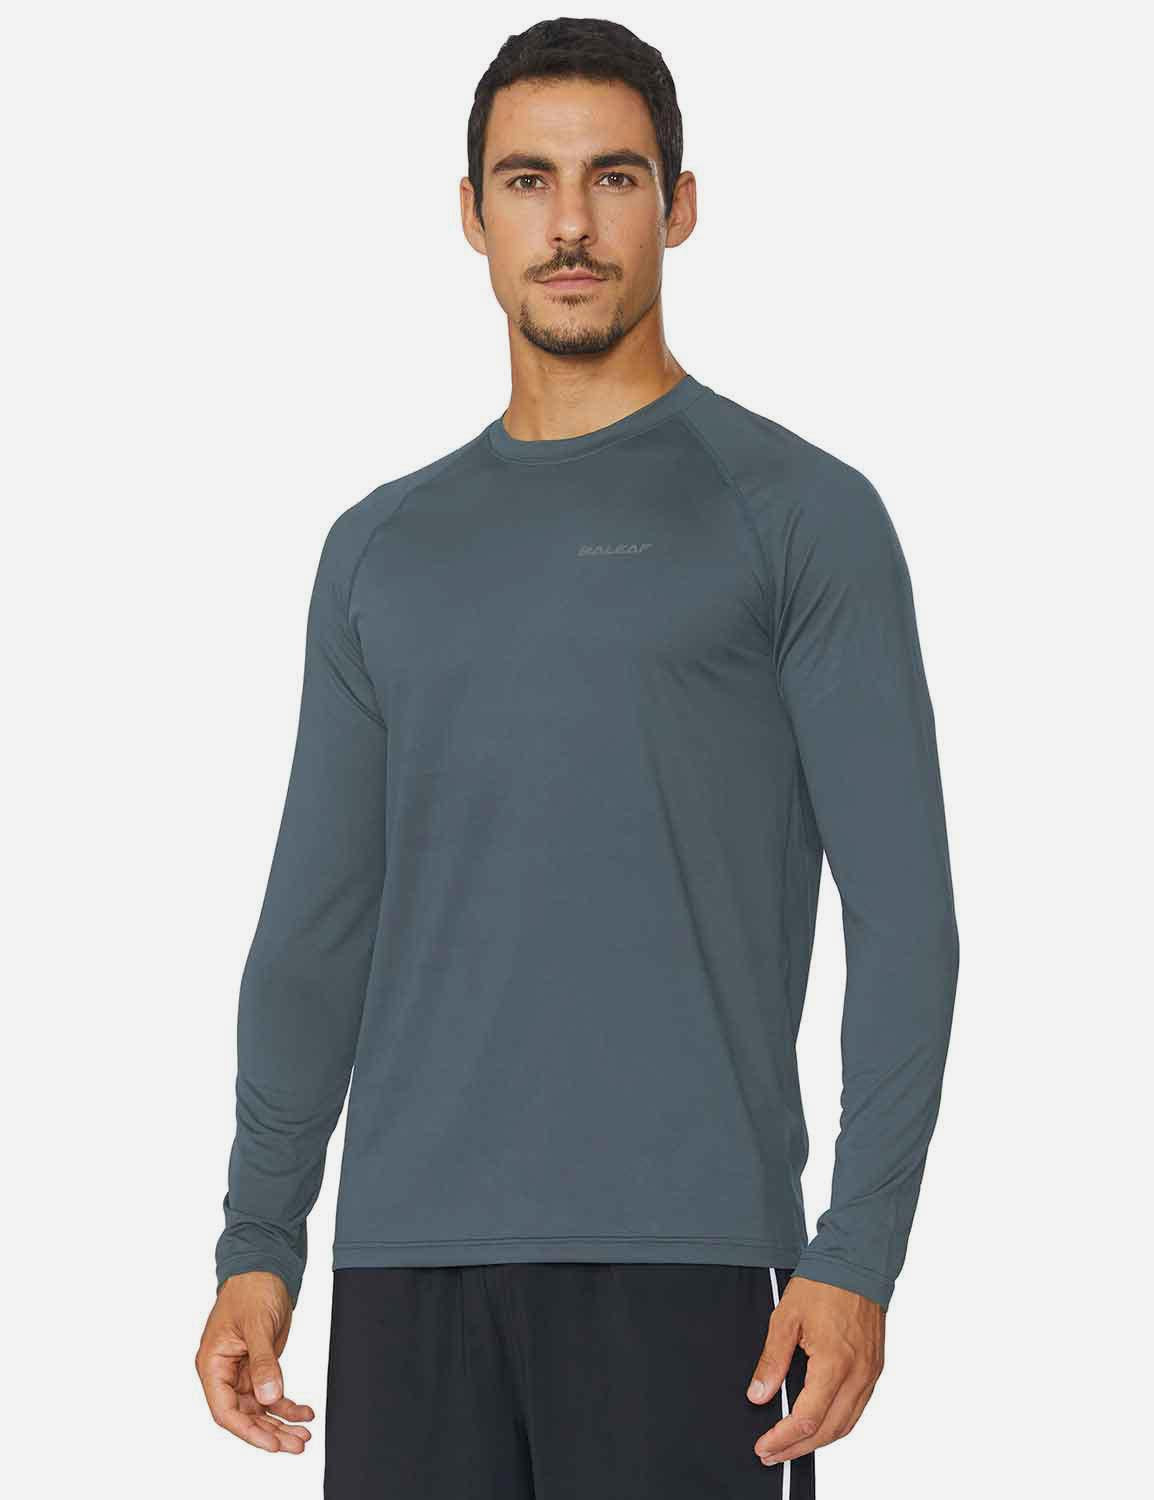 Baleaf Men's Workout Crew-Neck Slim-Cut Long Sleeved Shirt abd195 Slate Gray Side